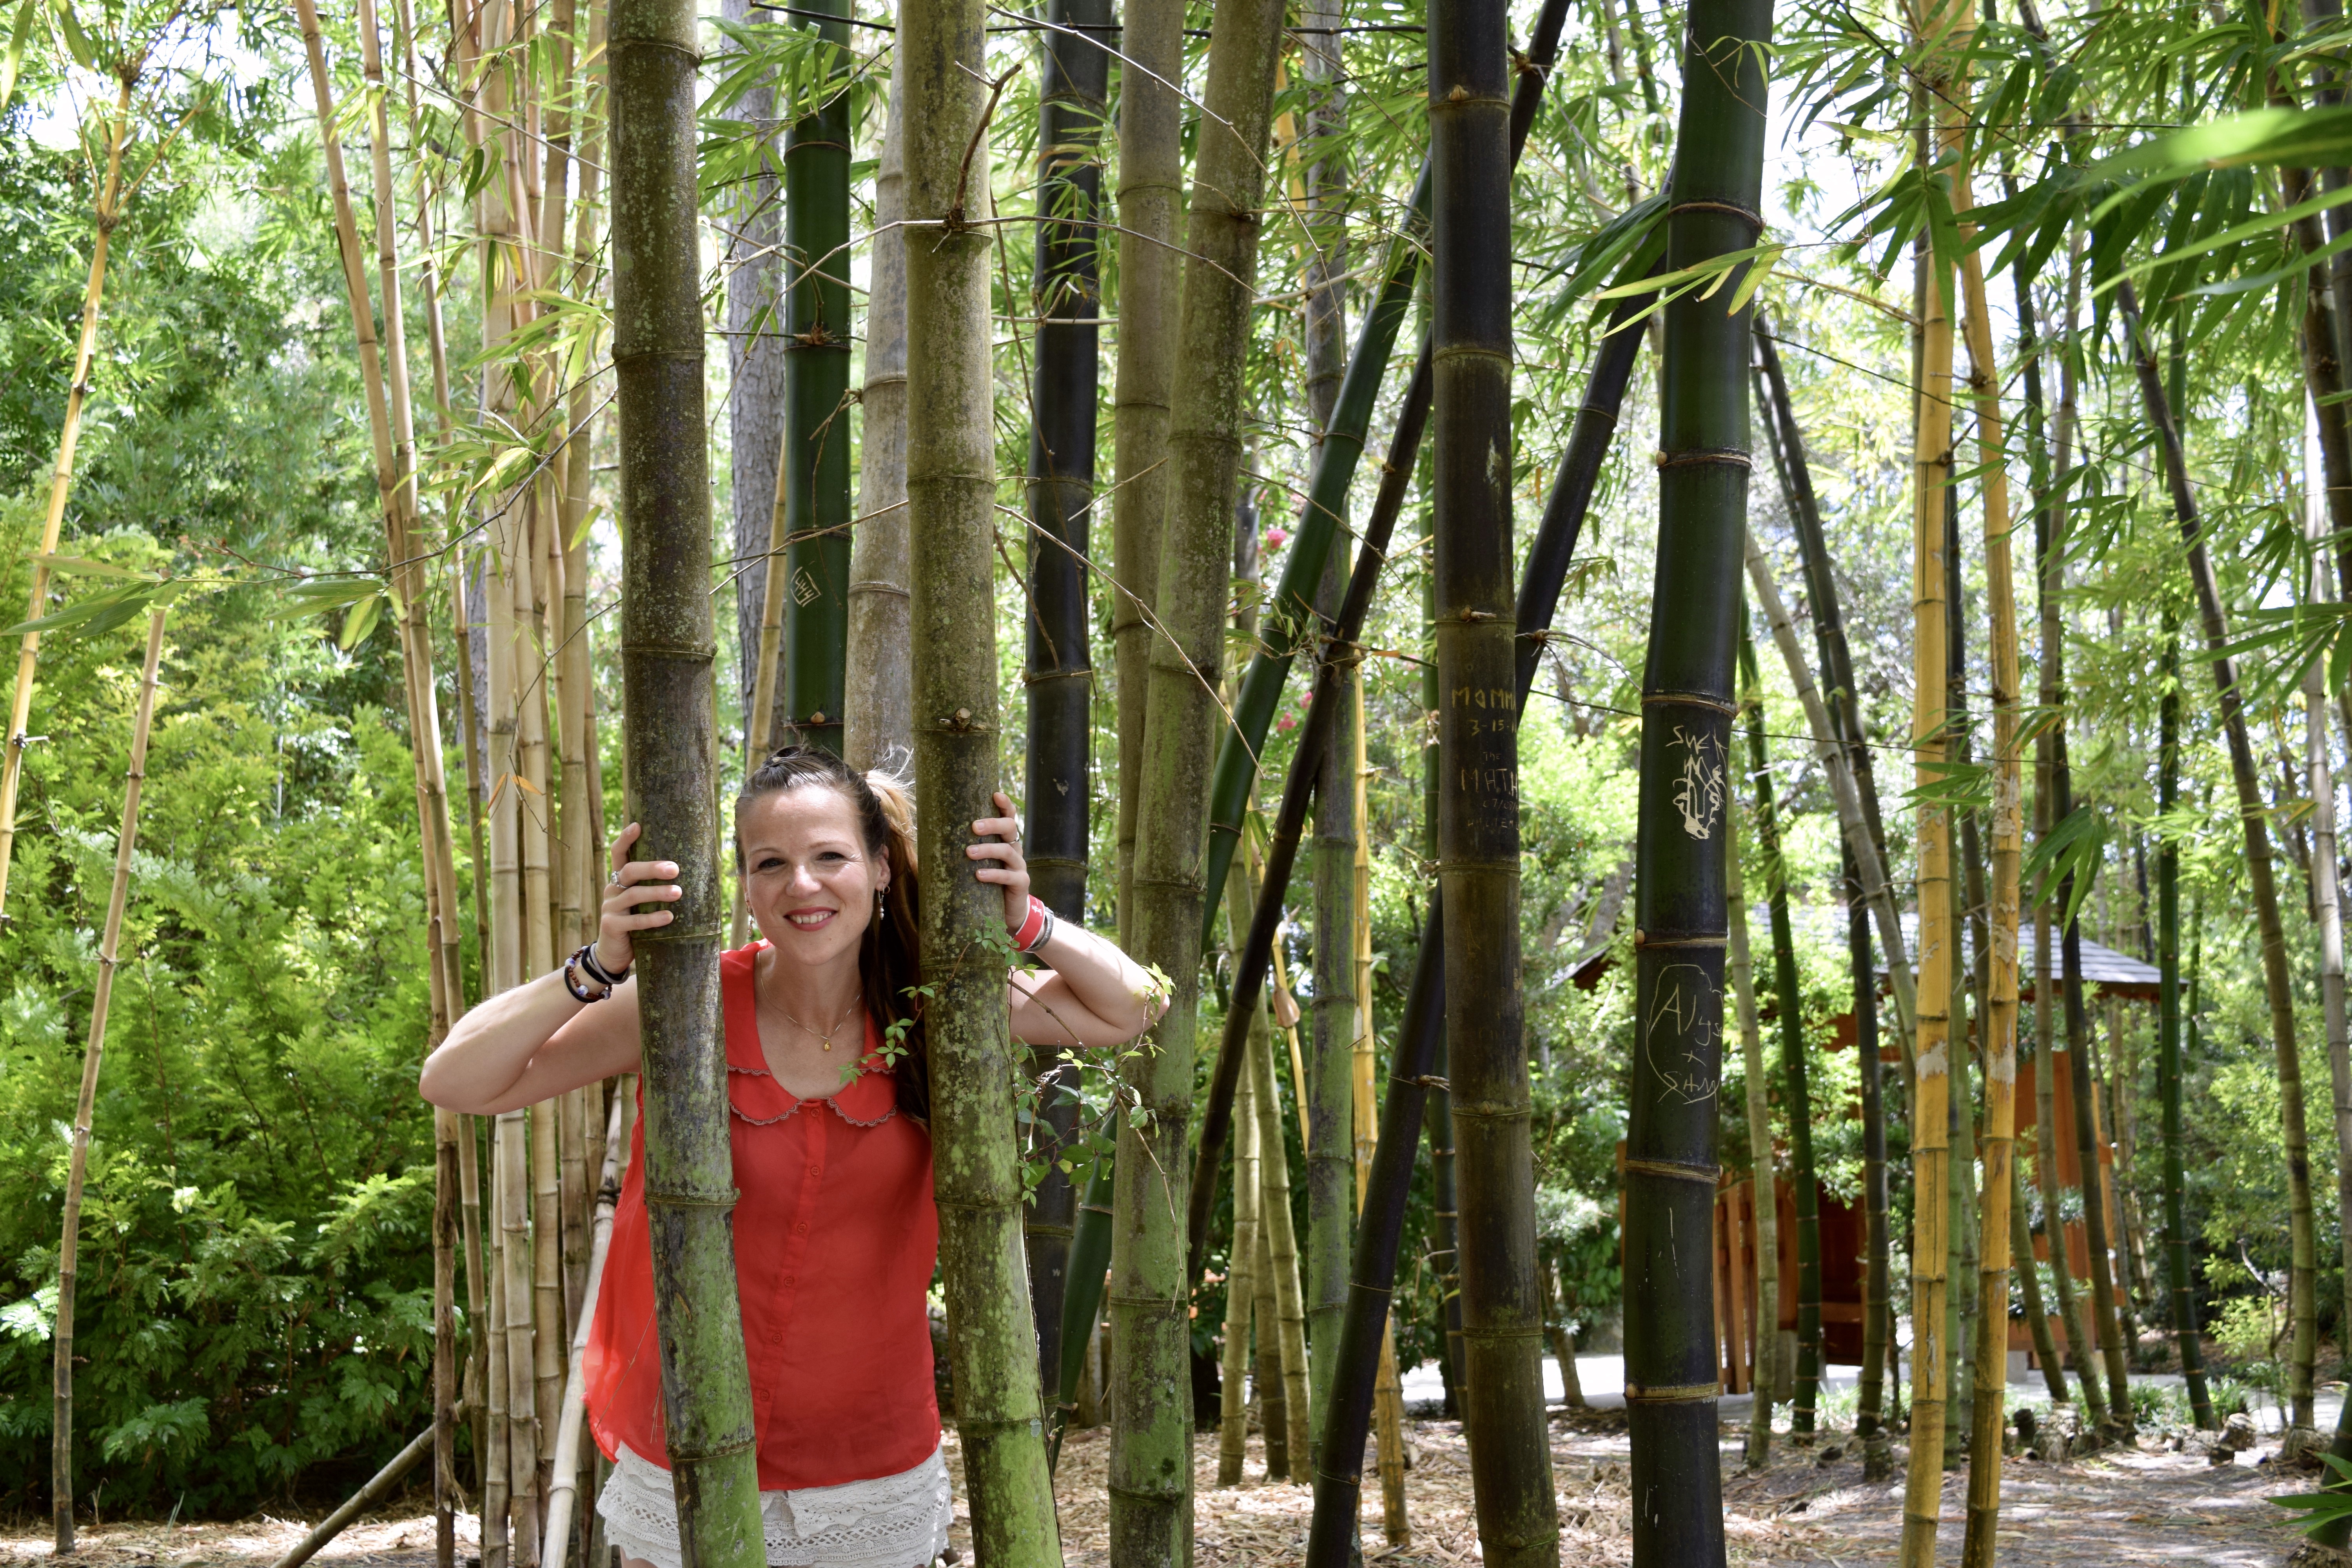 Jenn in the bamboo